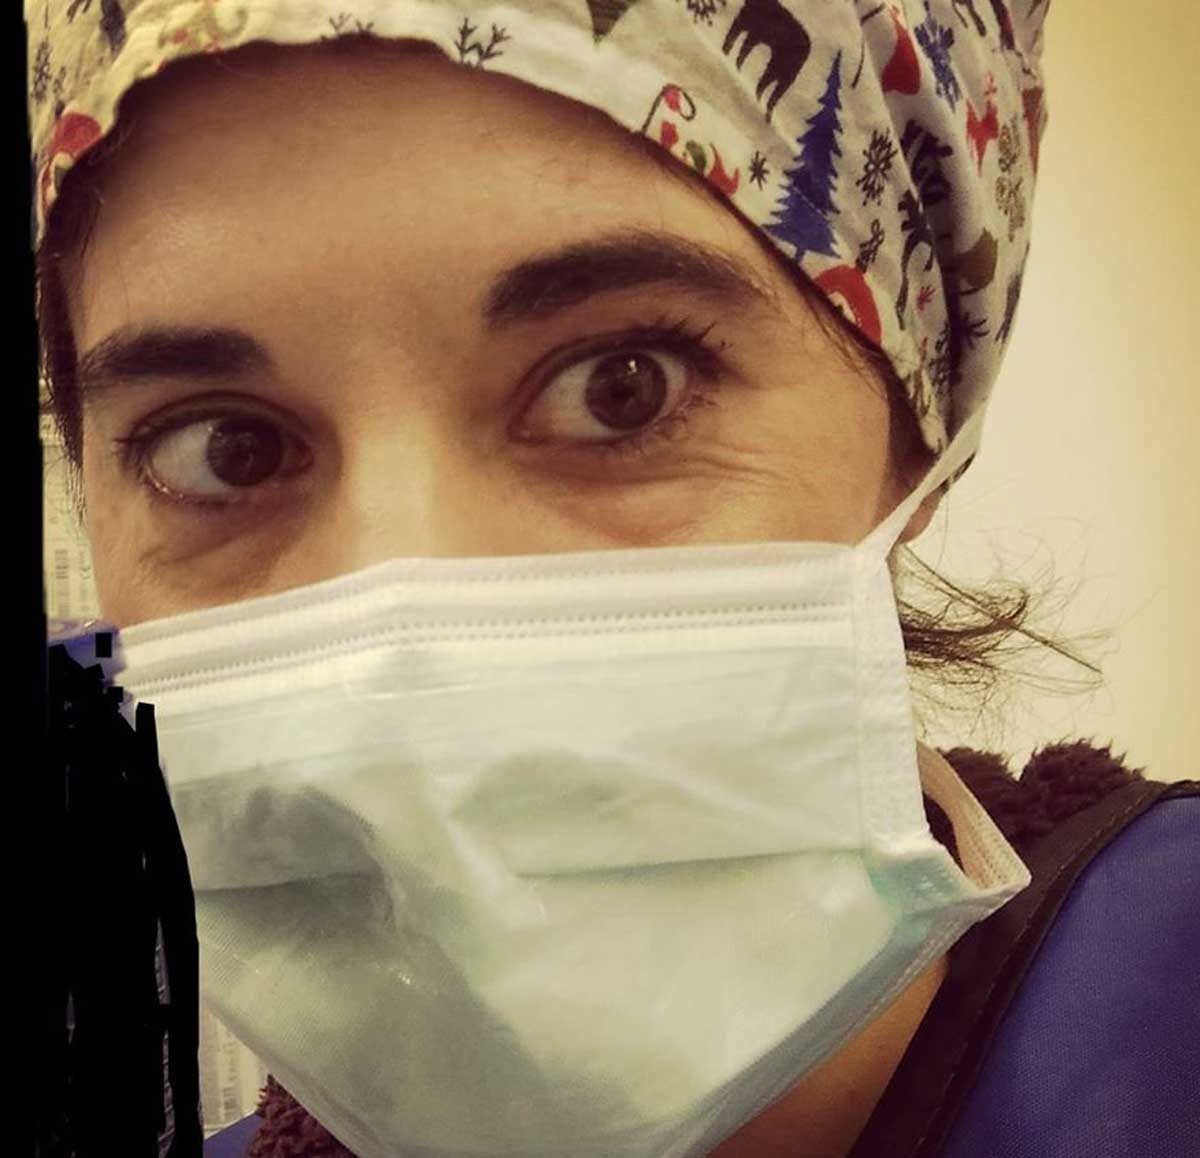 Τραγωδία: Ιταλίδα νοσοκόμα αυτοκτόνησε πιστεύοντας ότι είχε μεταδώσει σε άλλους τον κορονοϊό